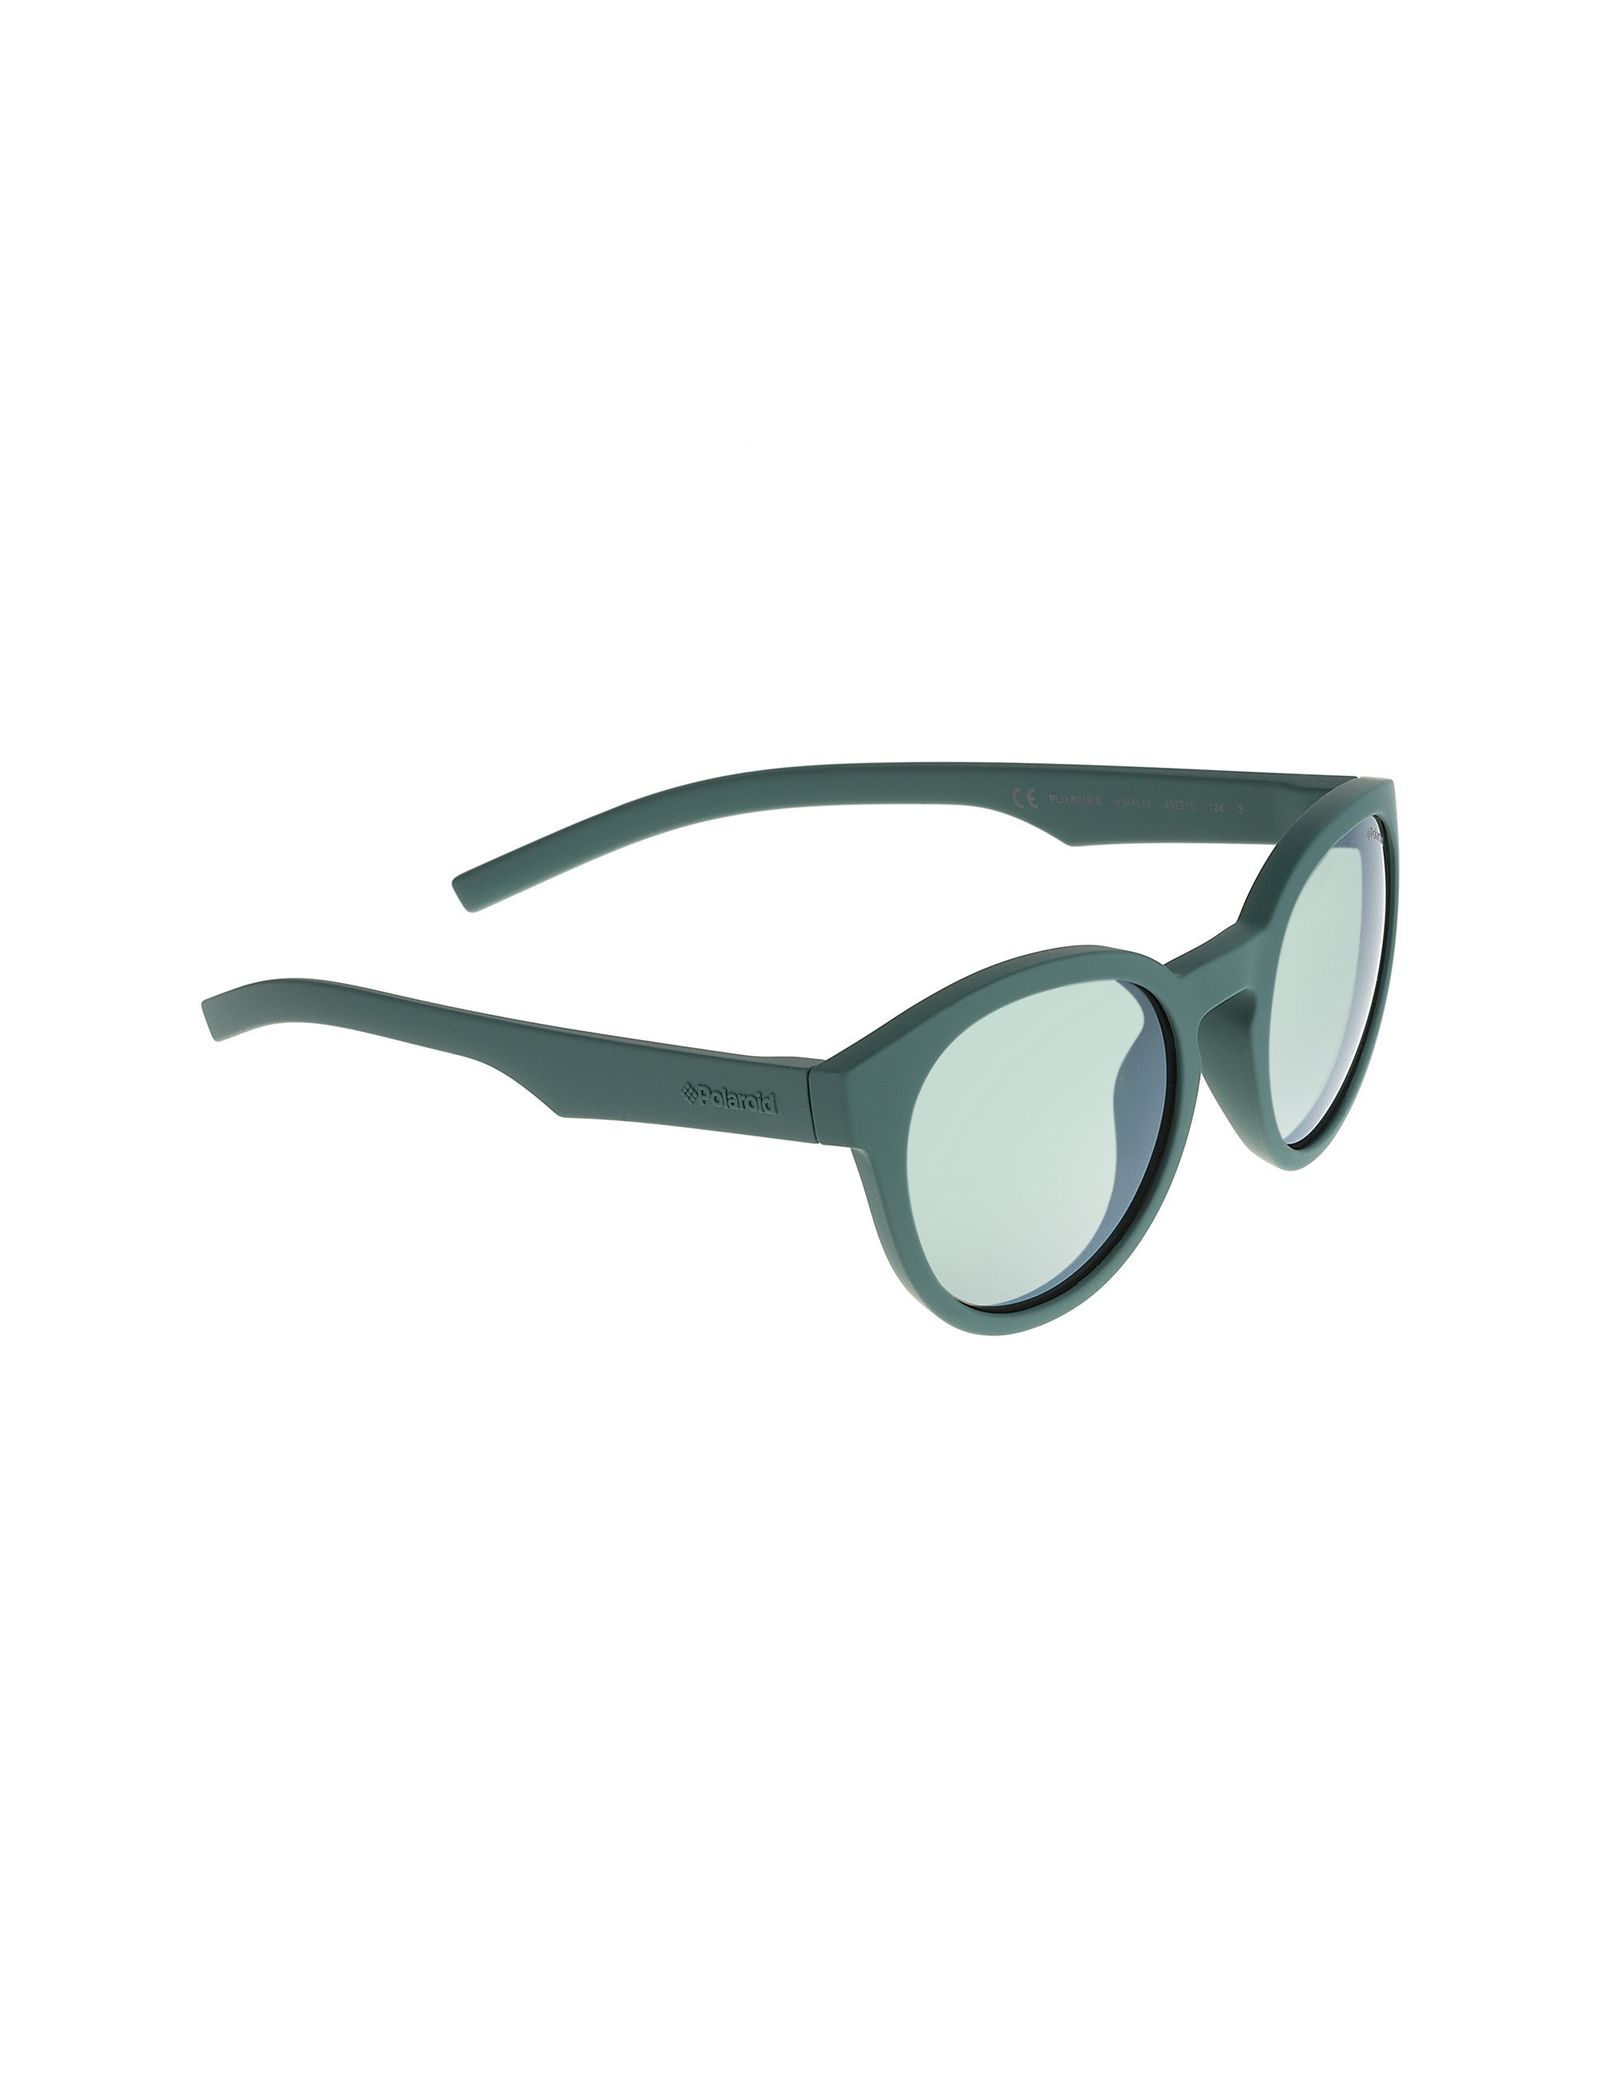 عینک آفتابی پنتوس بچگانه - پولاروید - سبز - 3